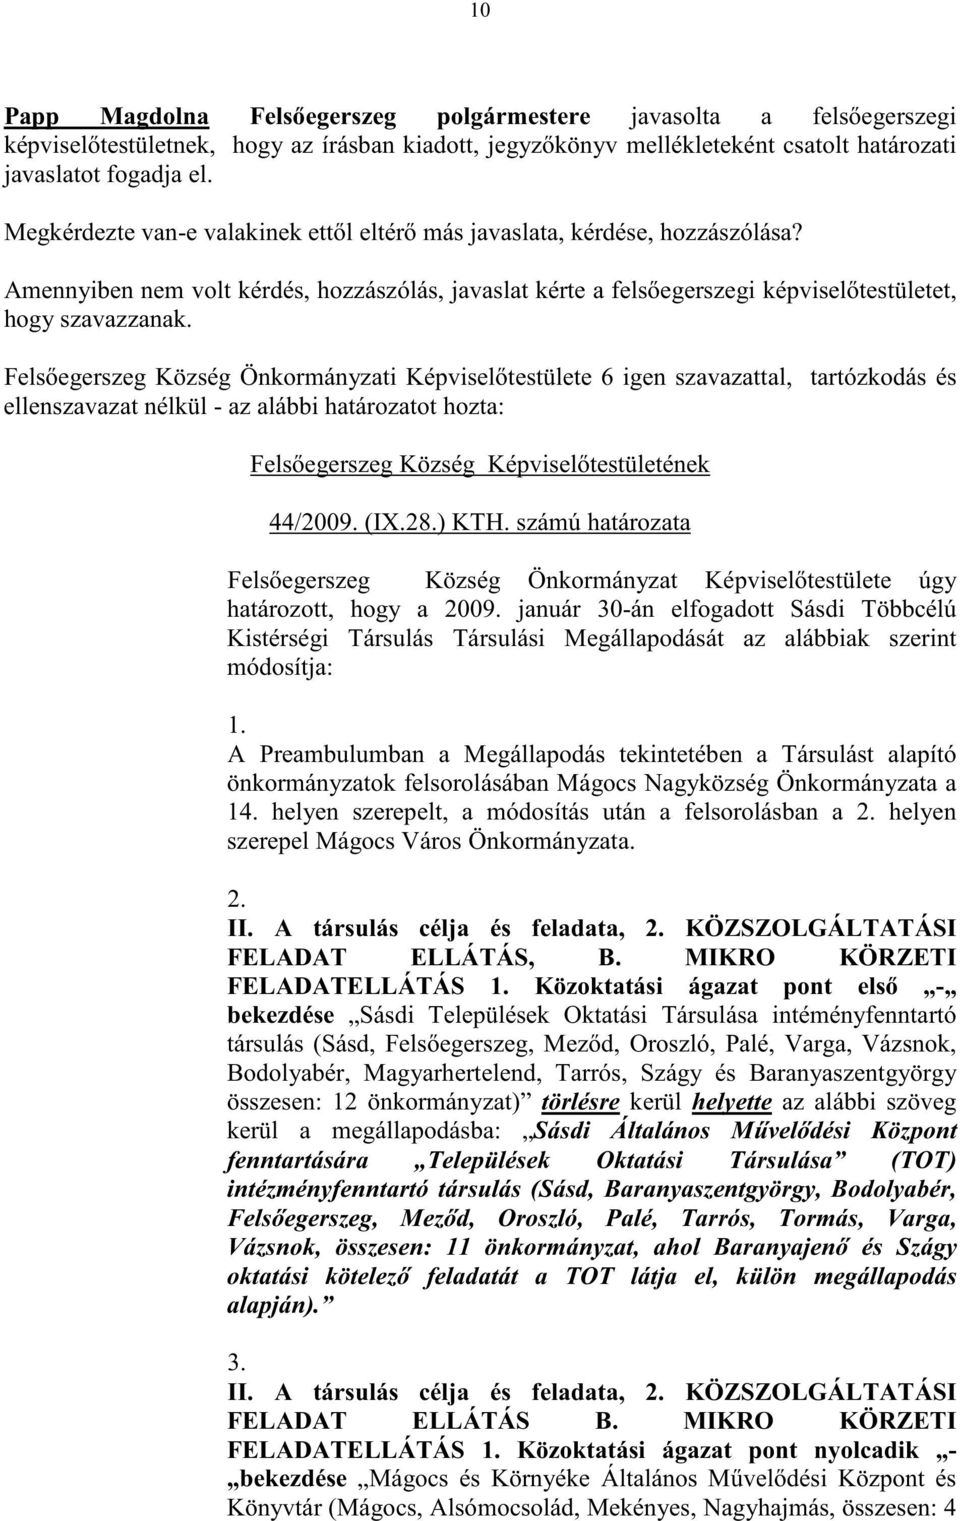 ellenszavazat nélkül - az alábbi határozatot hozta: Fels egerszeg Község Képvisel testületének 44/2009. (IX.28.) KTH.